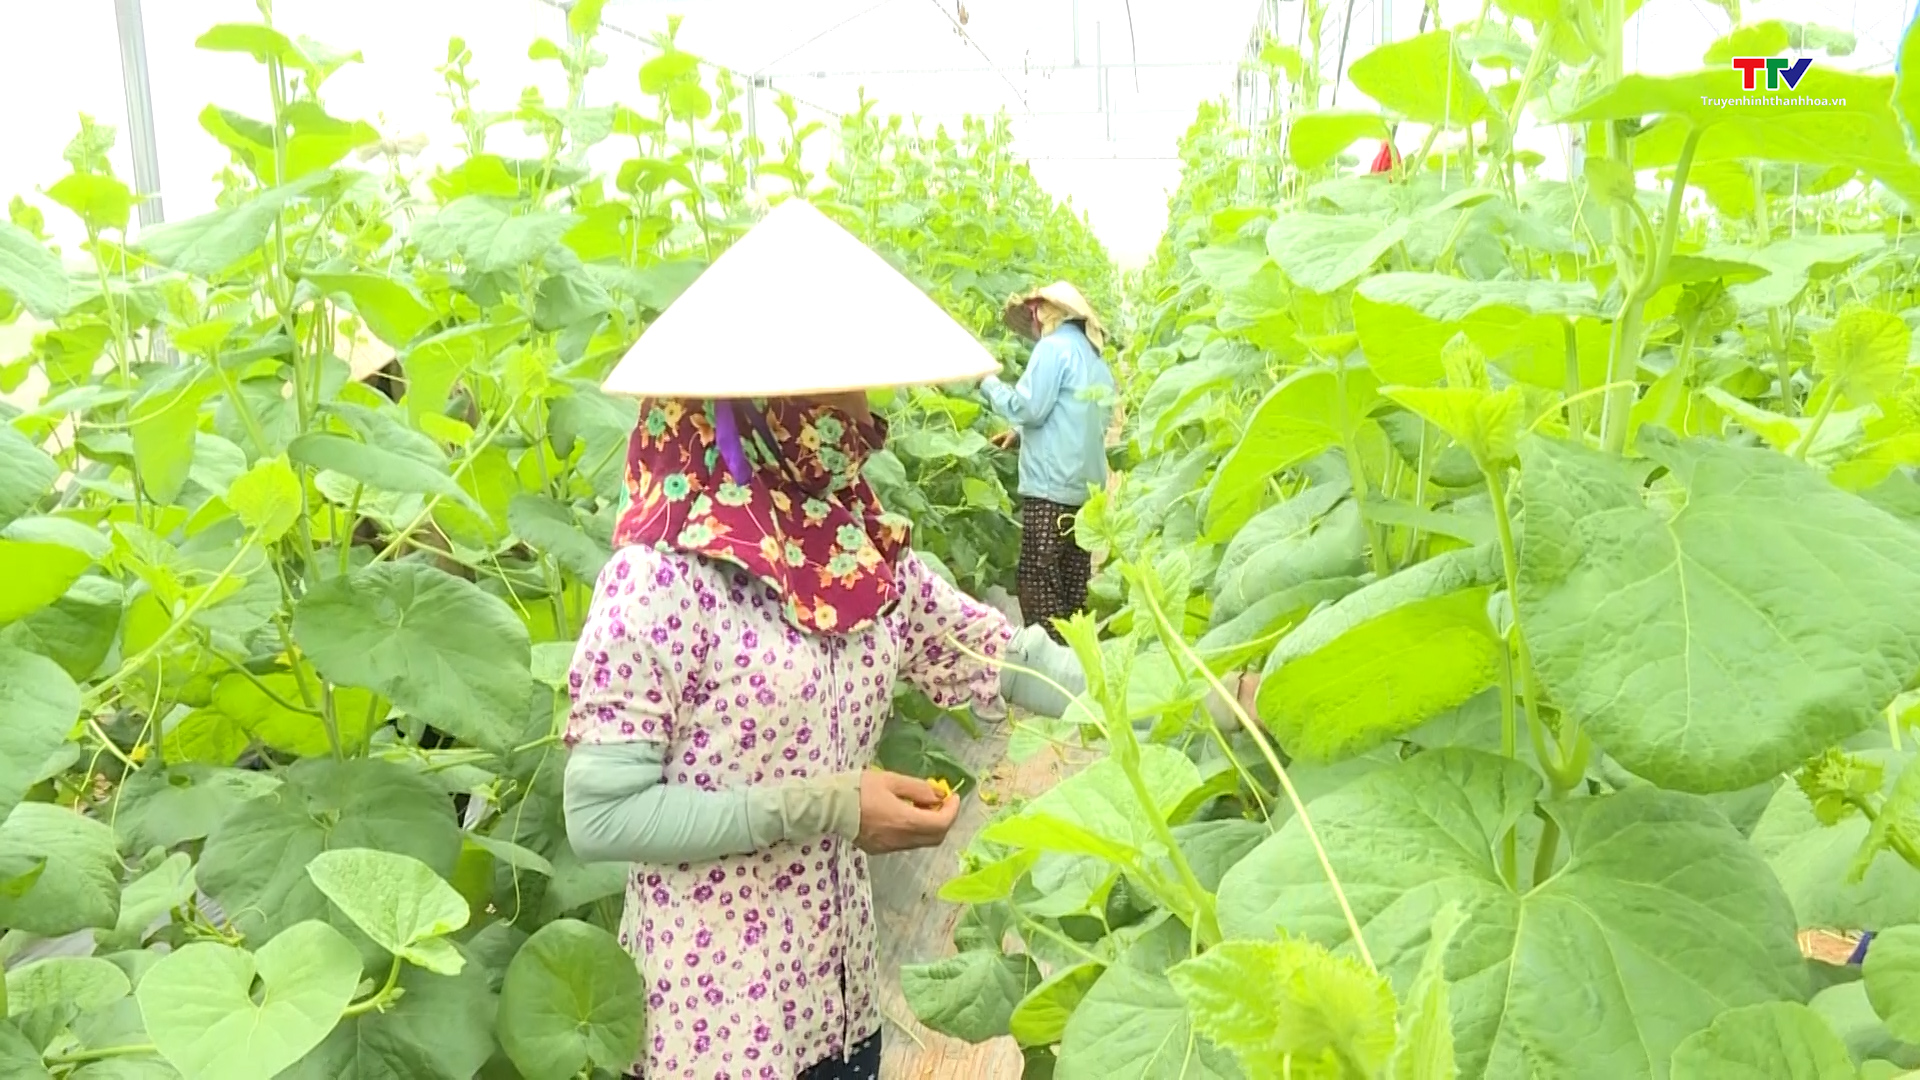  Huyện Nga Sơn tích cực chuyển đổi cơ cấu cây trồng, vật nuôi - Ảnh 3.